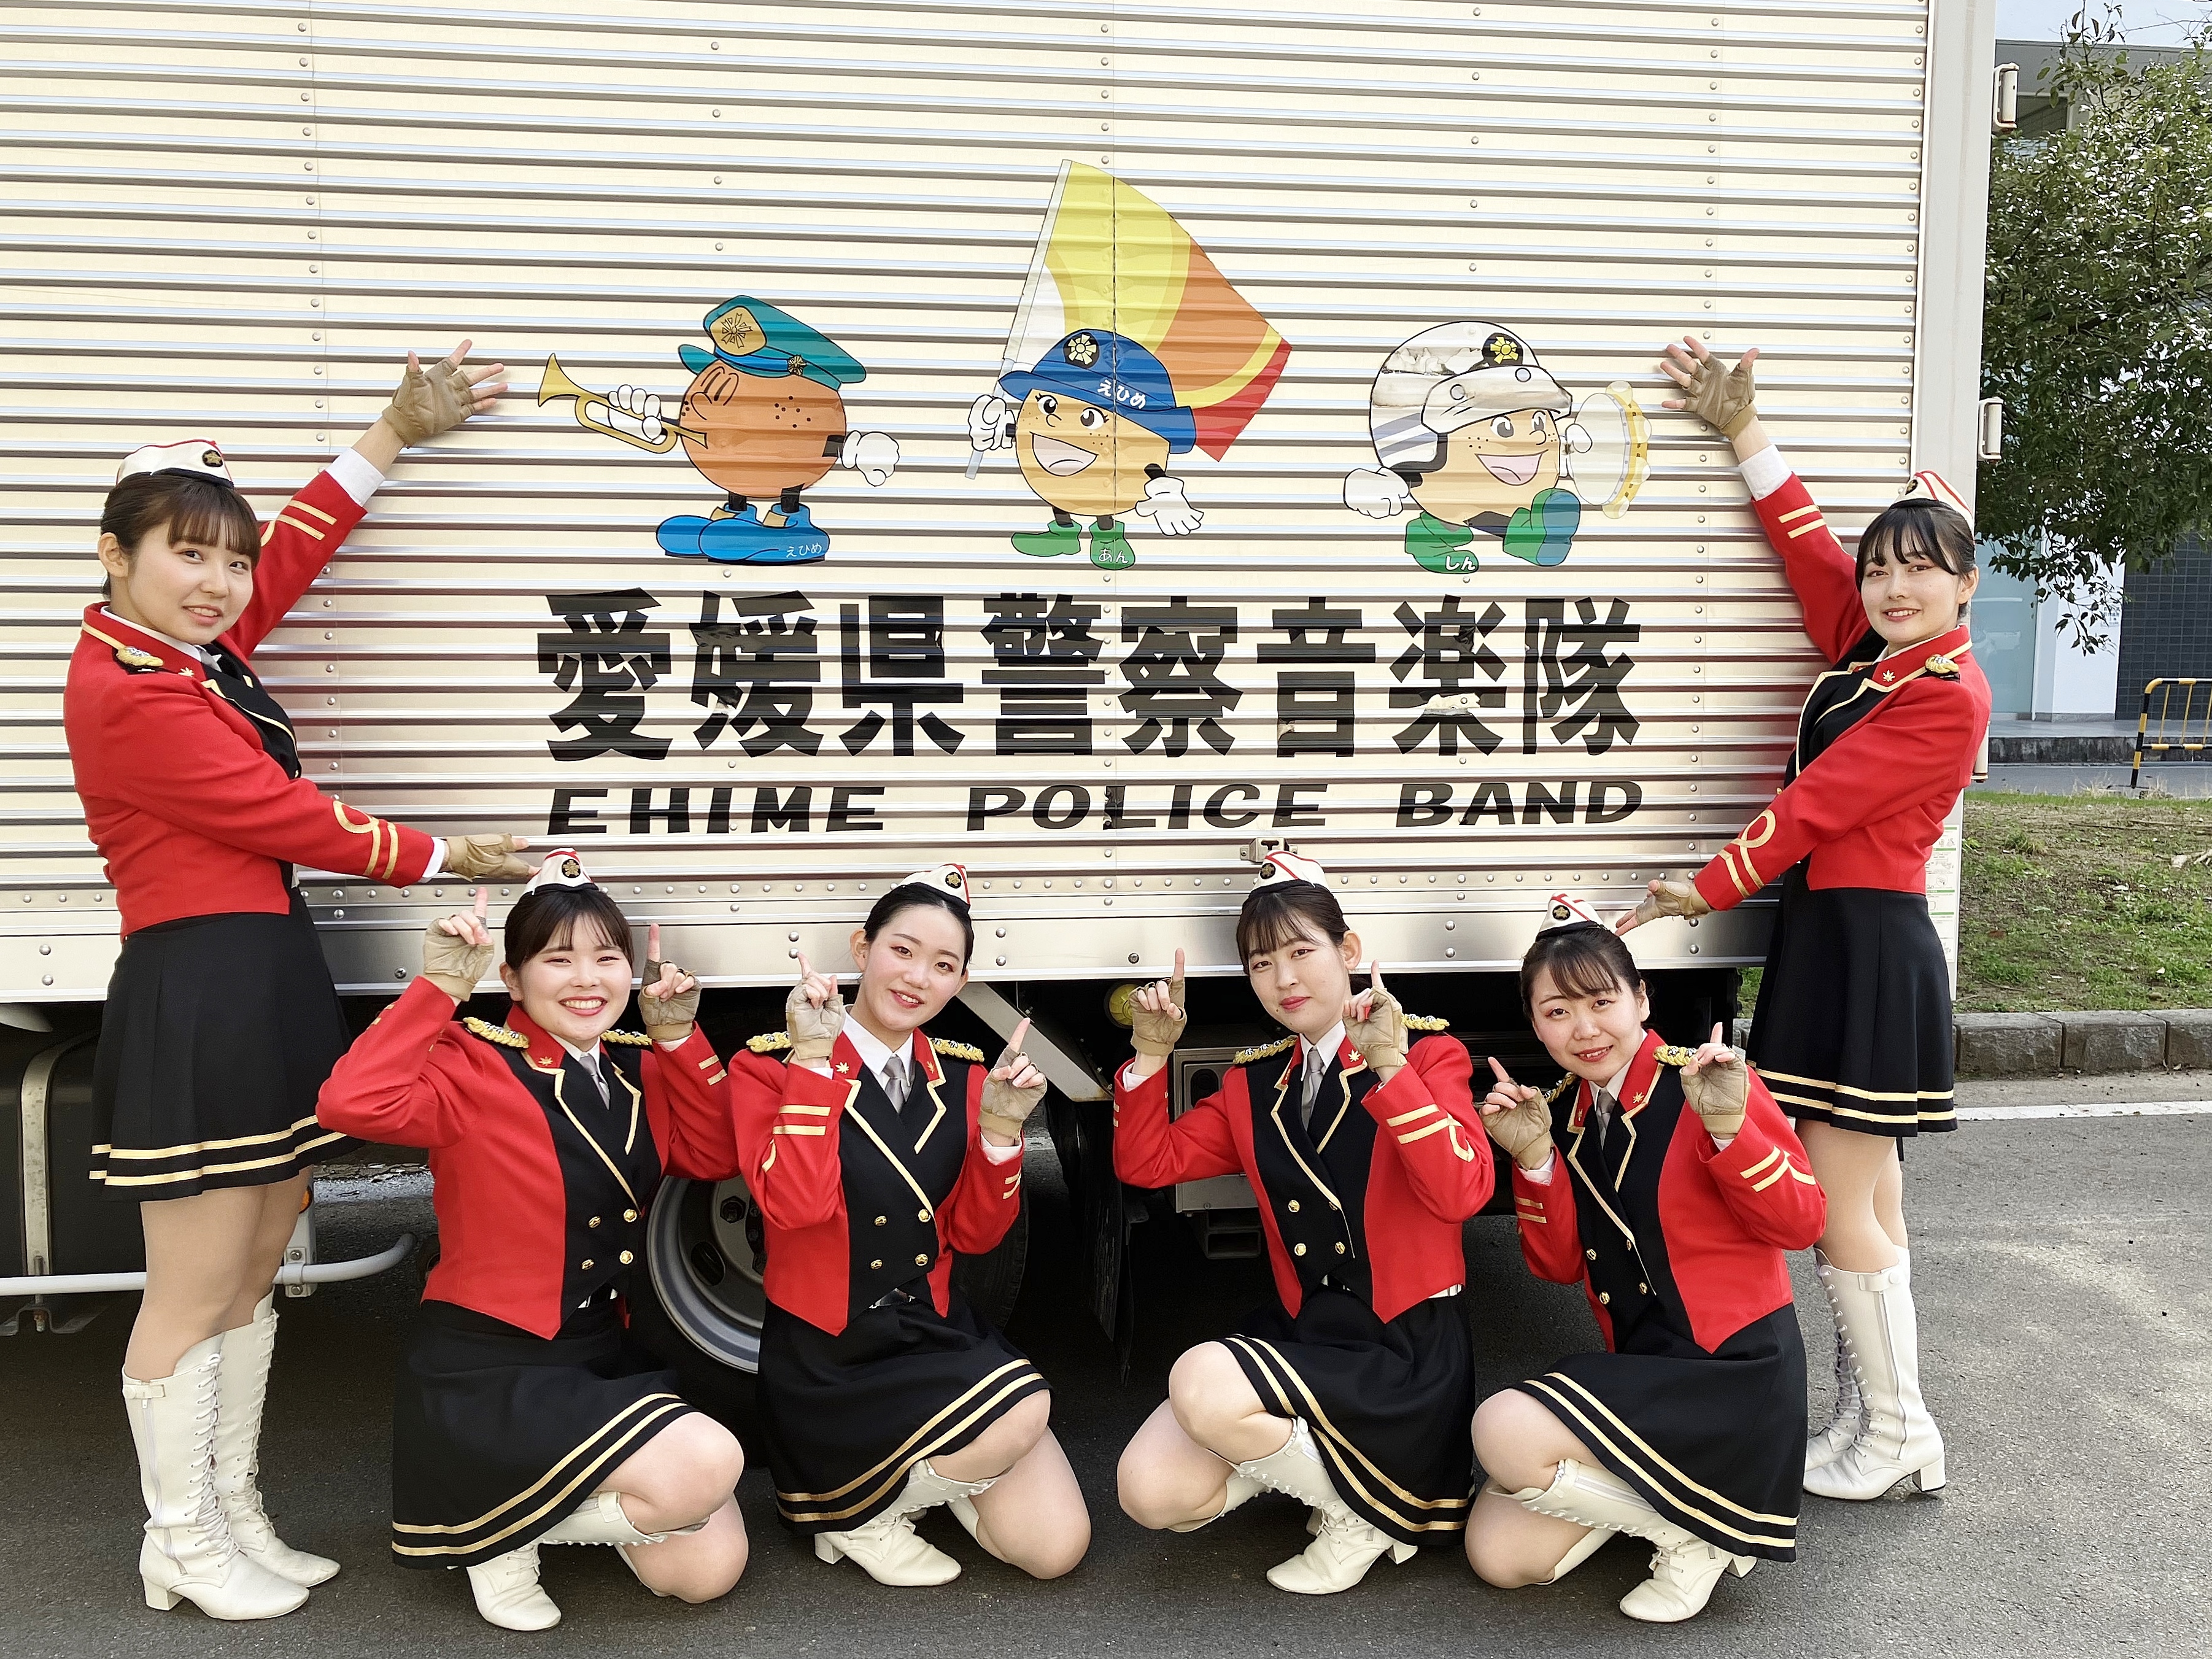 愛媛県警察員楽隊ロゴの前で記念撮影